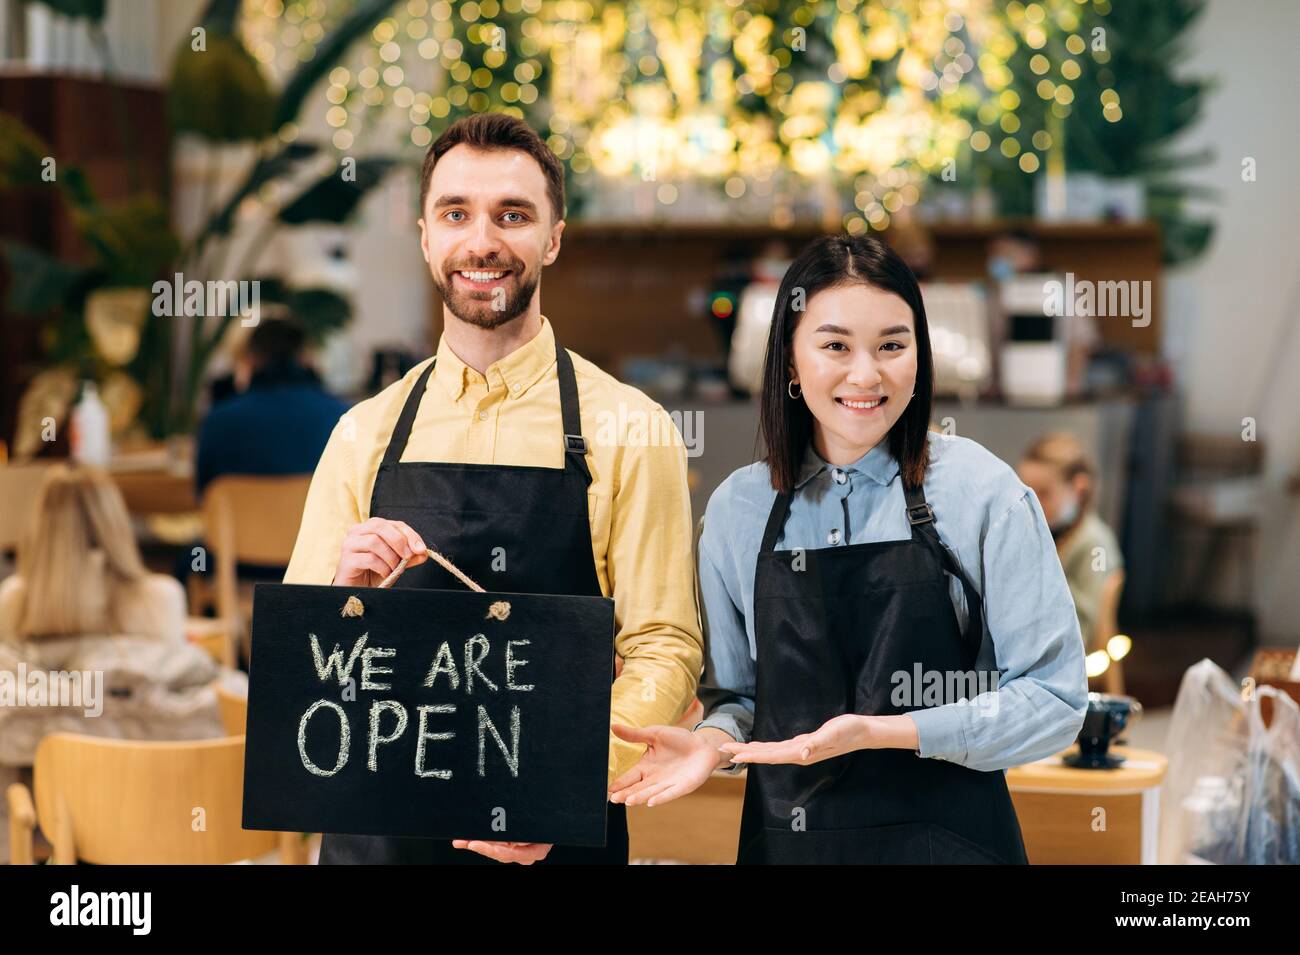 Willkommen, wir sind OFFEN. Zwei multirassische freundliche Kellner in Uniform stehen in einem Restaurant, Café oder Bar, zeigen das Schild OFFEN, mit einem angenehmen Lächeln. Teamwork-Konzept Stockfoto